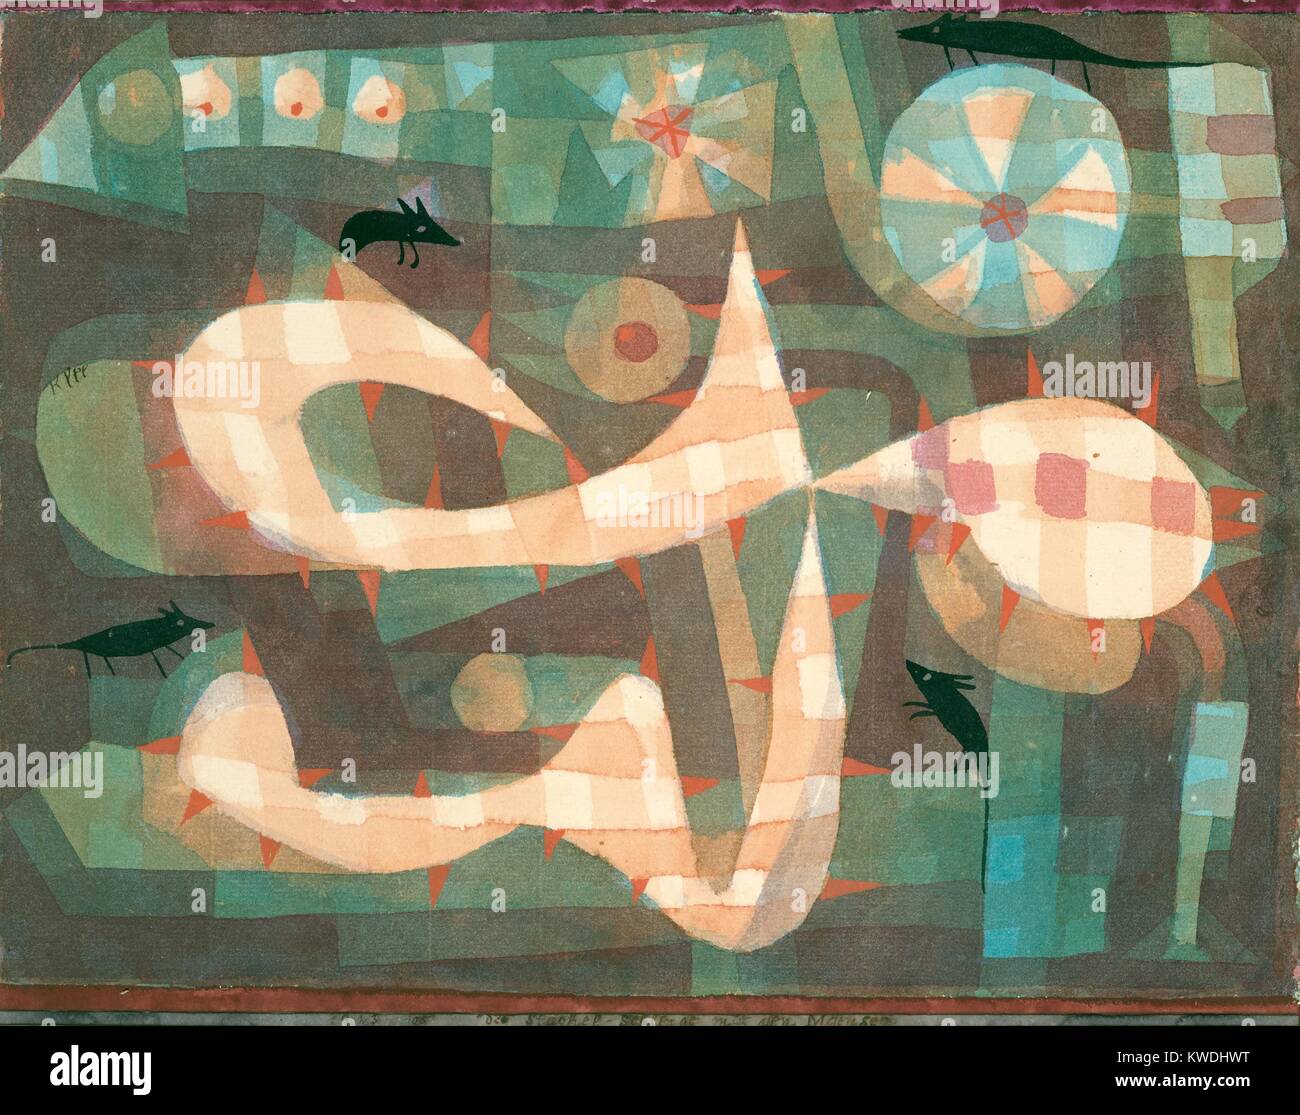 Der stacheldraht Schlinge, Mäusen, von Paul Klee, 1923, Schweizer Zeichnung, Aquarell und Gouache auf Papier. Vier flache Silhouetten von Mäusen bewohnen mazelike Formen, eine mit bedrohlichen orange dreieckige Projektionen, die von der Kante (BSLOC 2017 7 61) Stockfoto